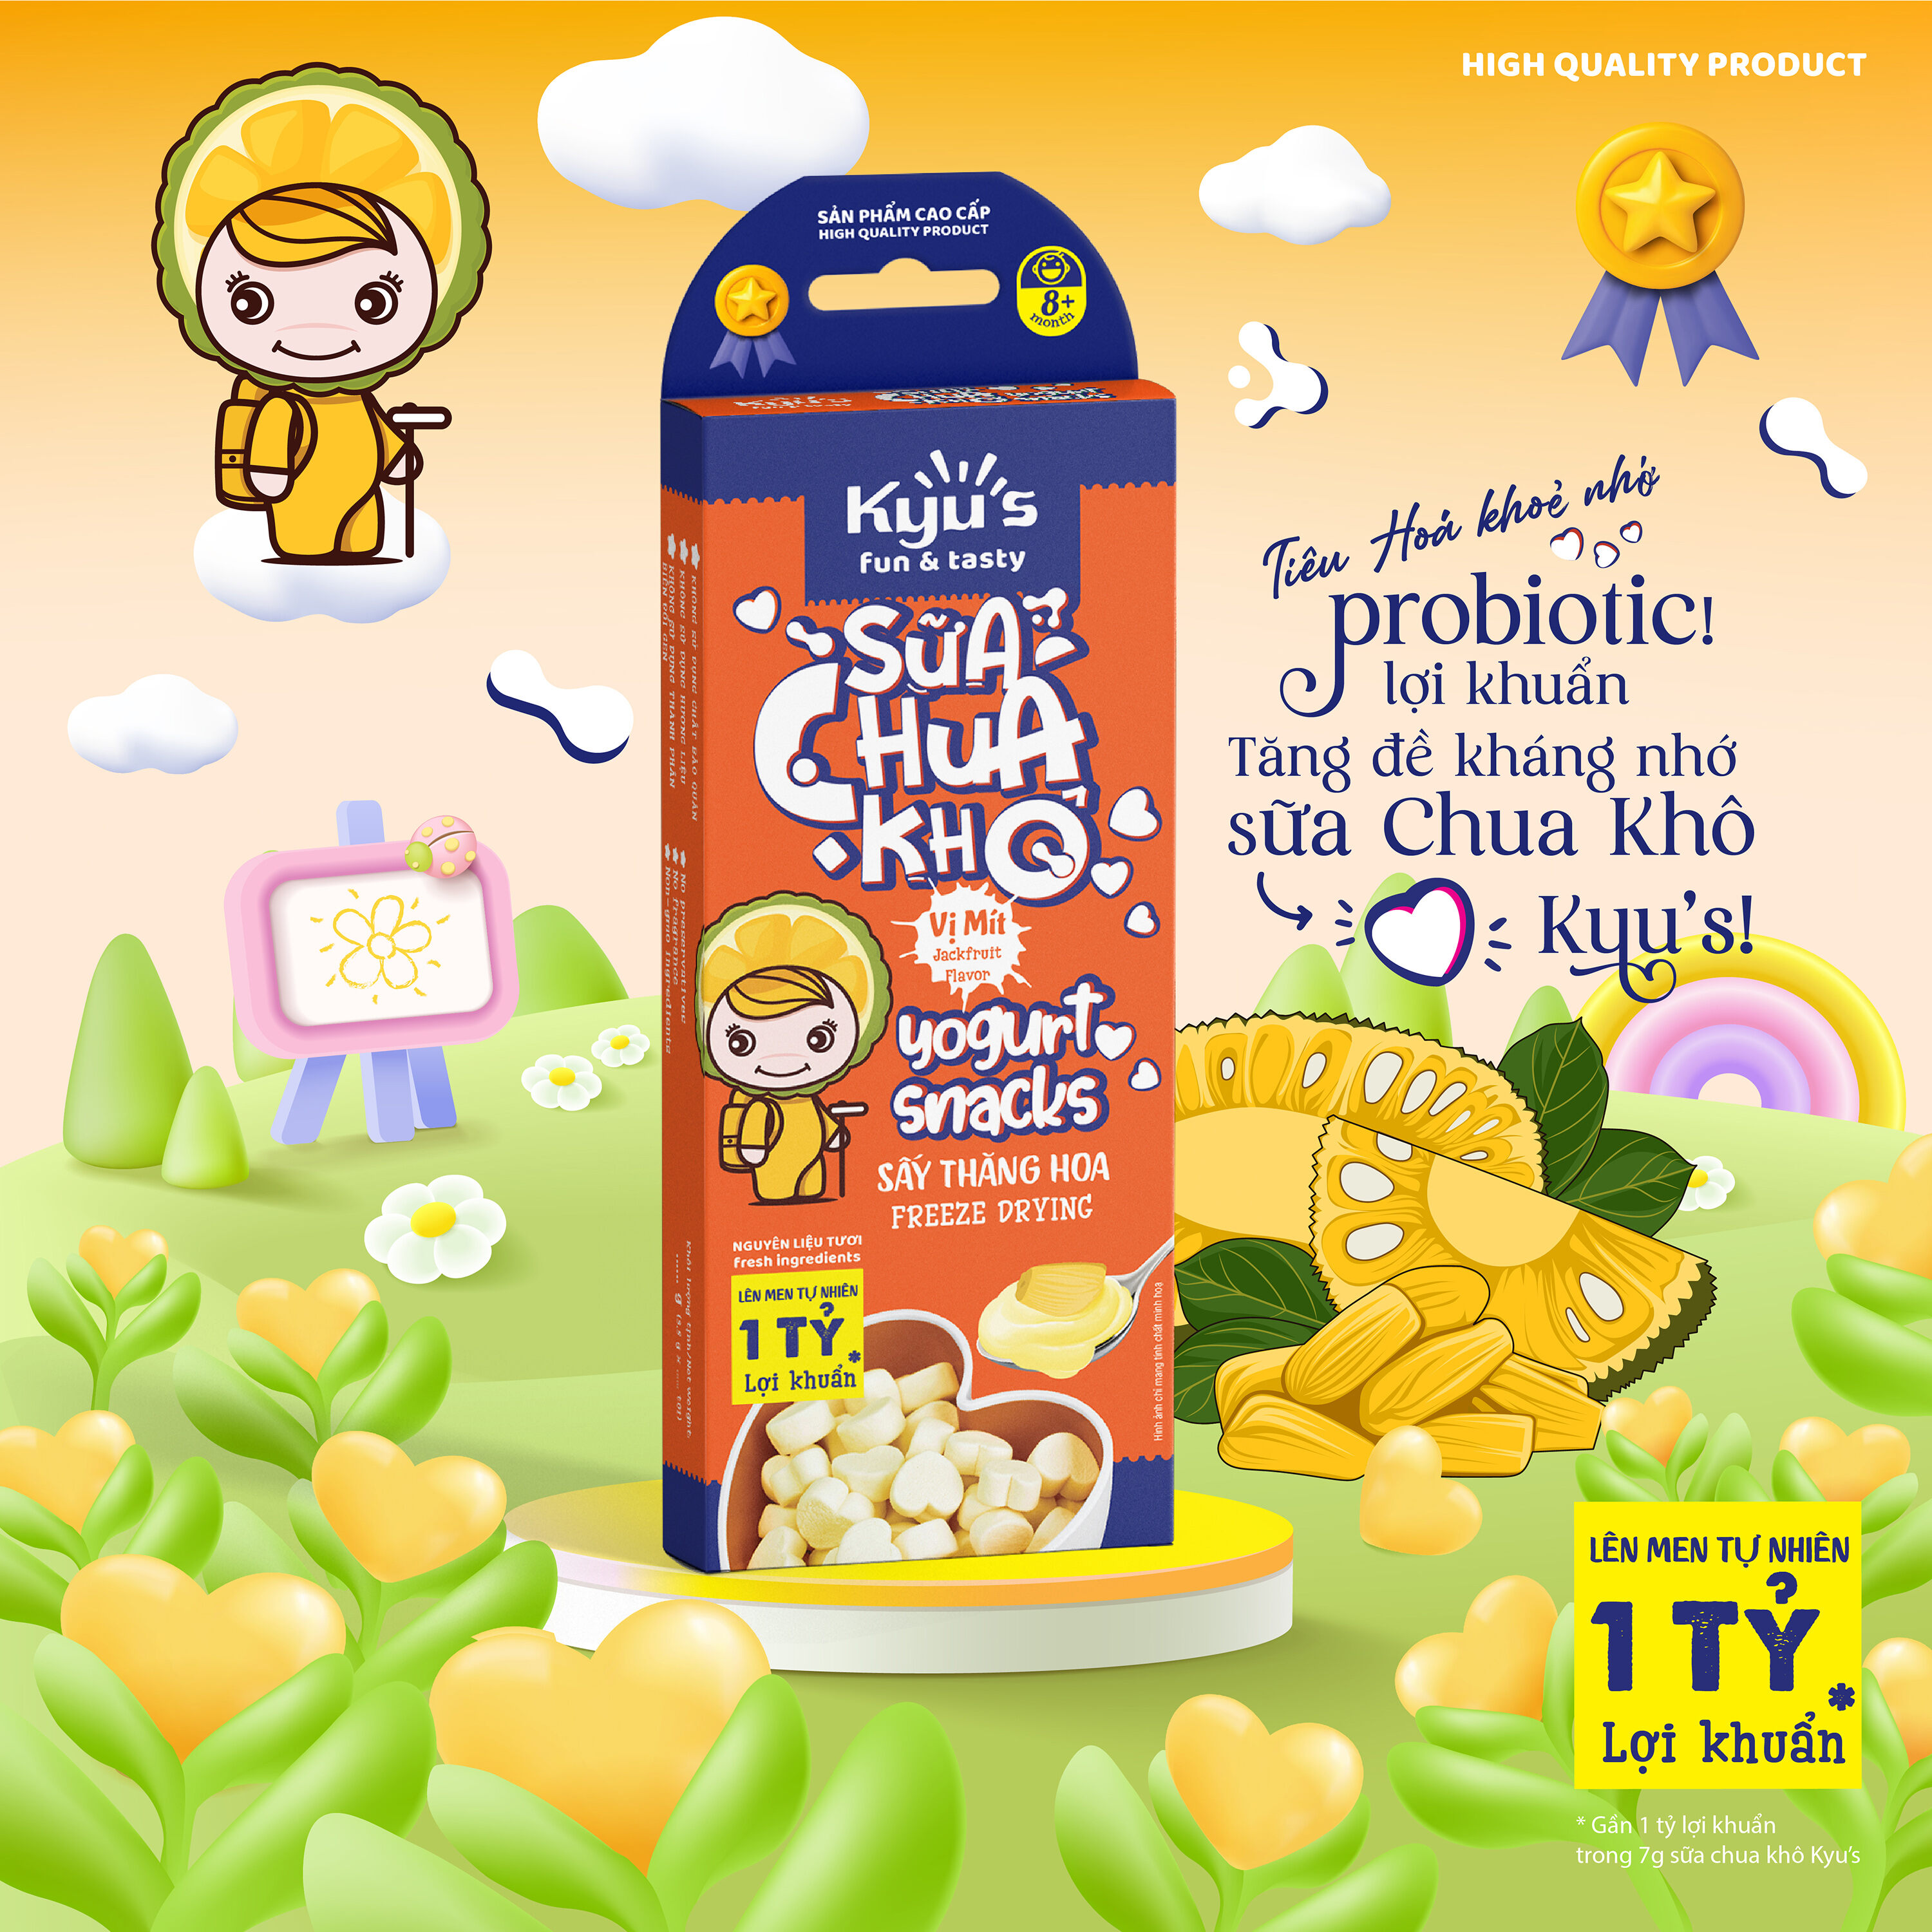 Sữa Chua Khô Kyu s 7g - Vị mít - Sấy thăng hoa - Hỗ trợ tiêu hóa